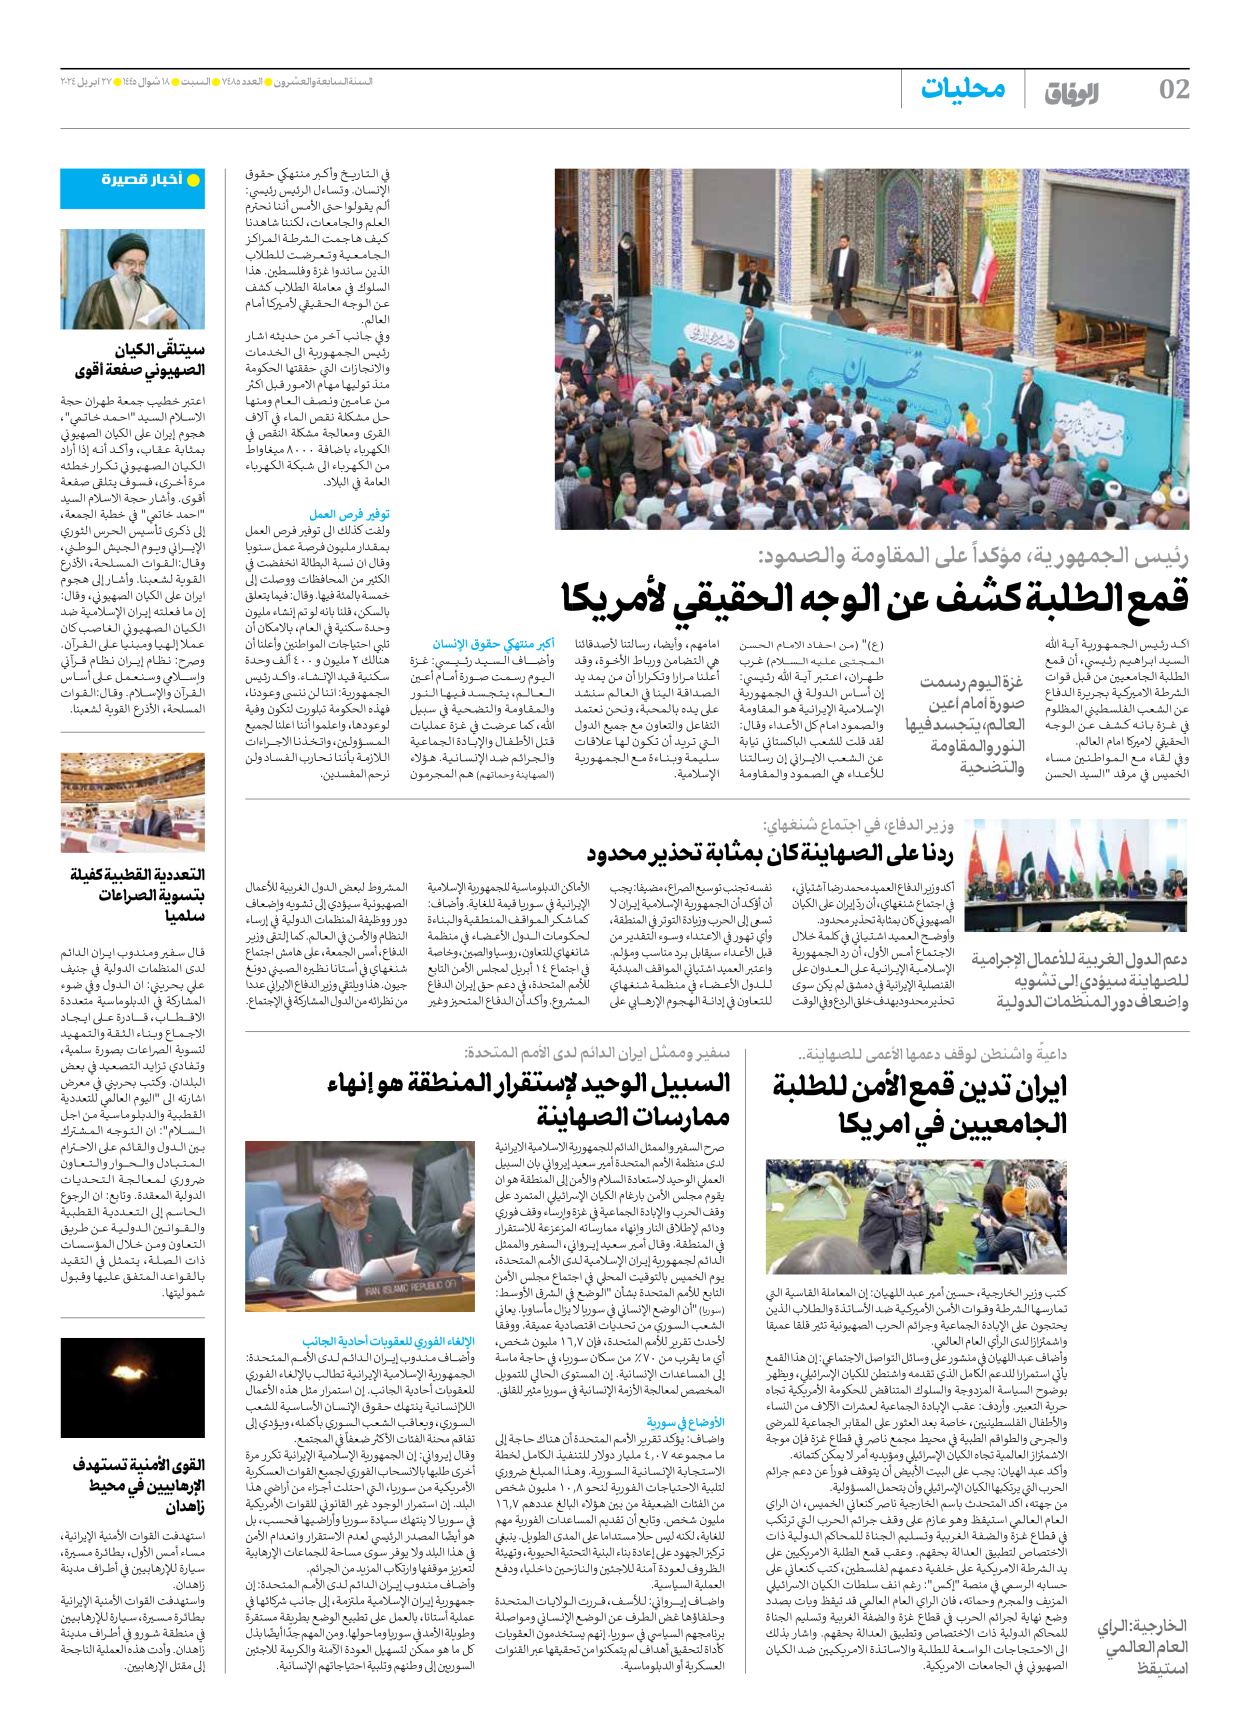 صحیفة ایران الدولیة الوفاق - العدد سبعة آلاف وأربعمائة وخمسة وثمانون - ٢٧ أبريل ٢٠٢٤ - الصفحة ۲